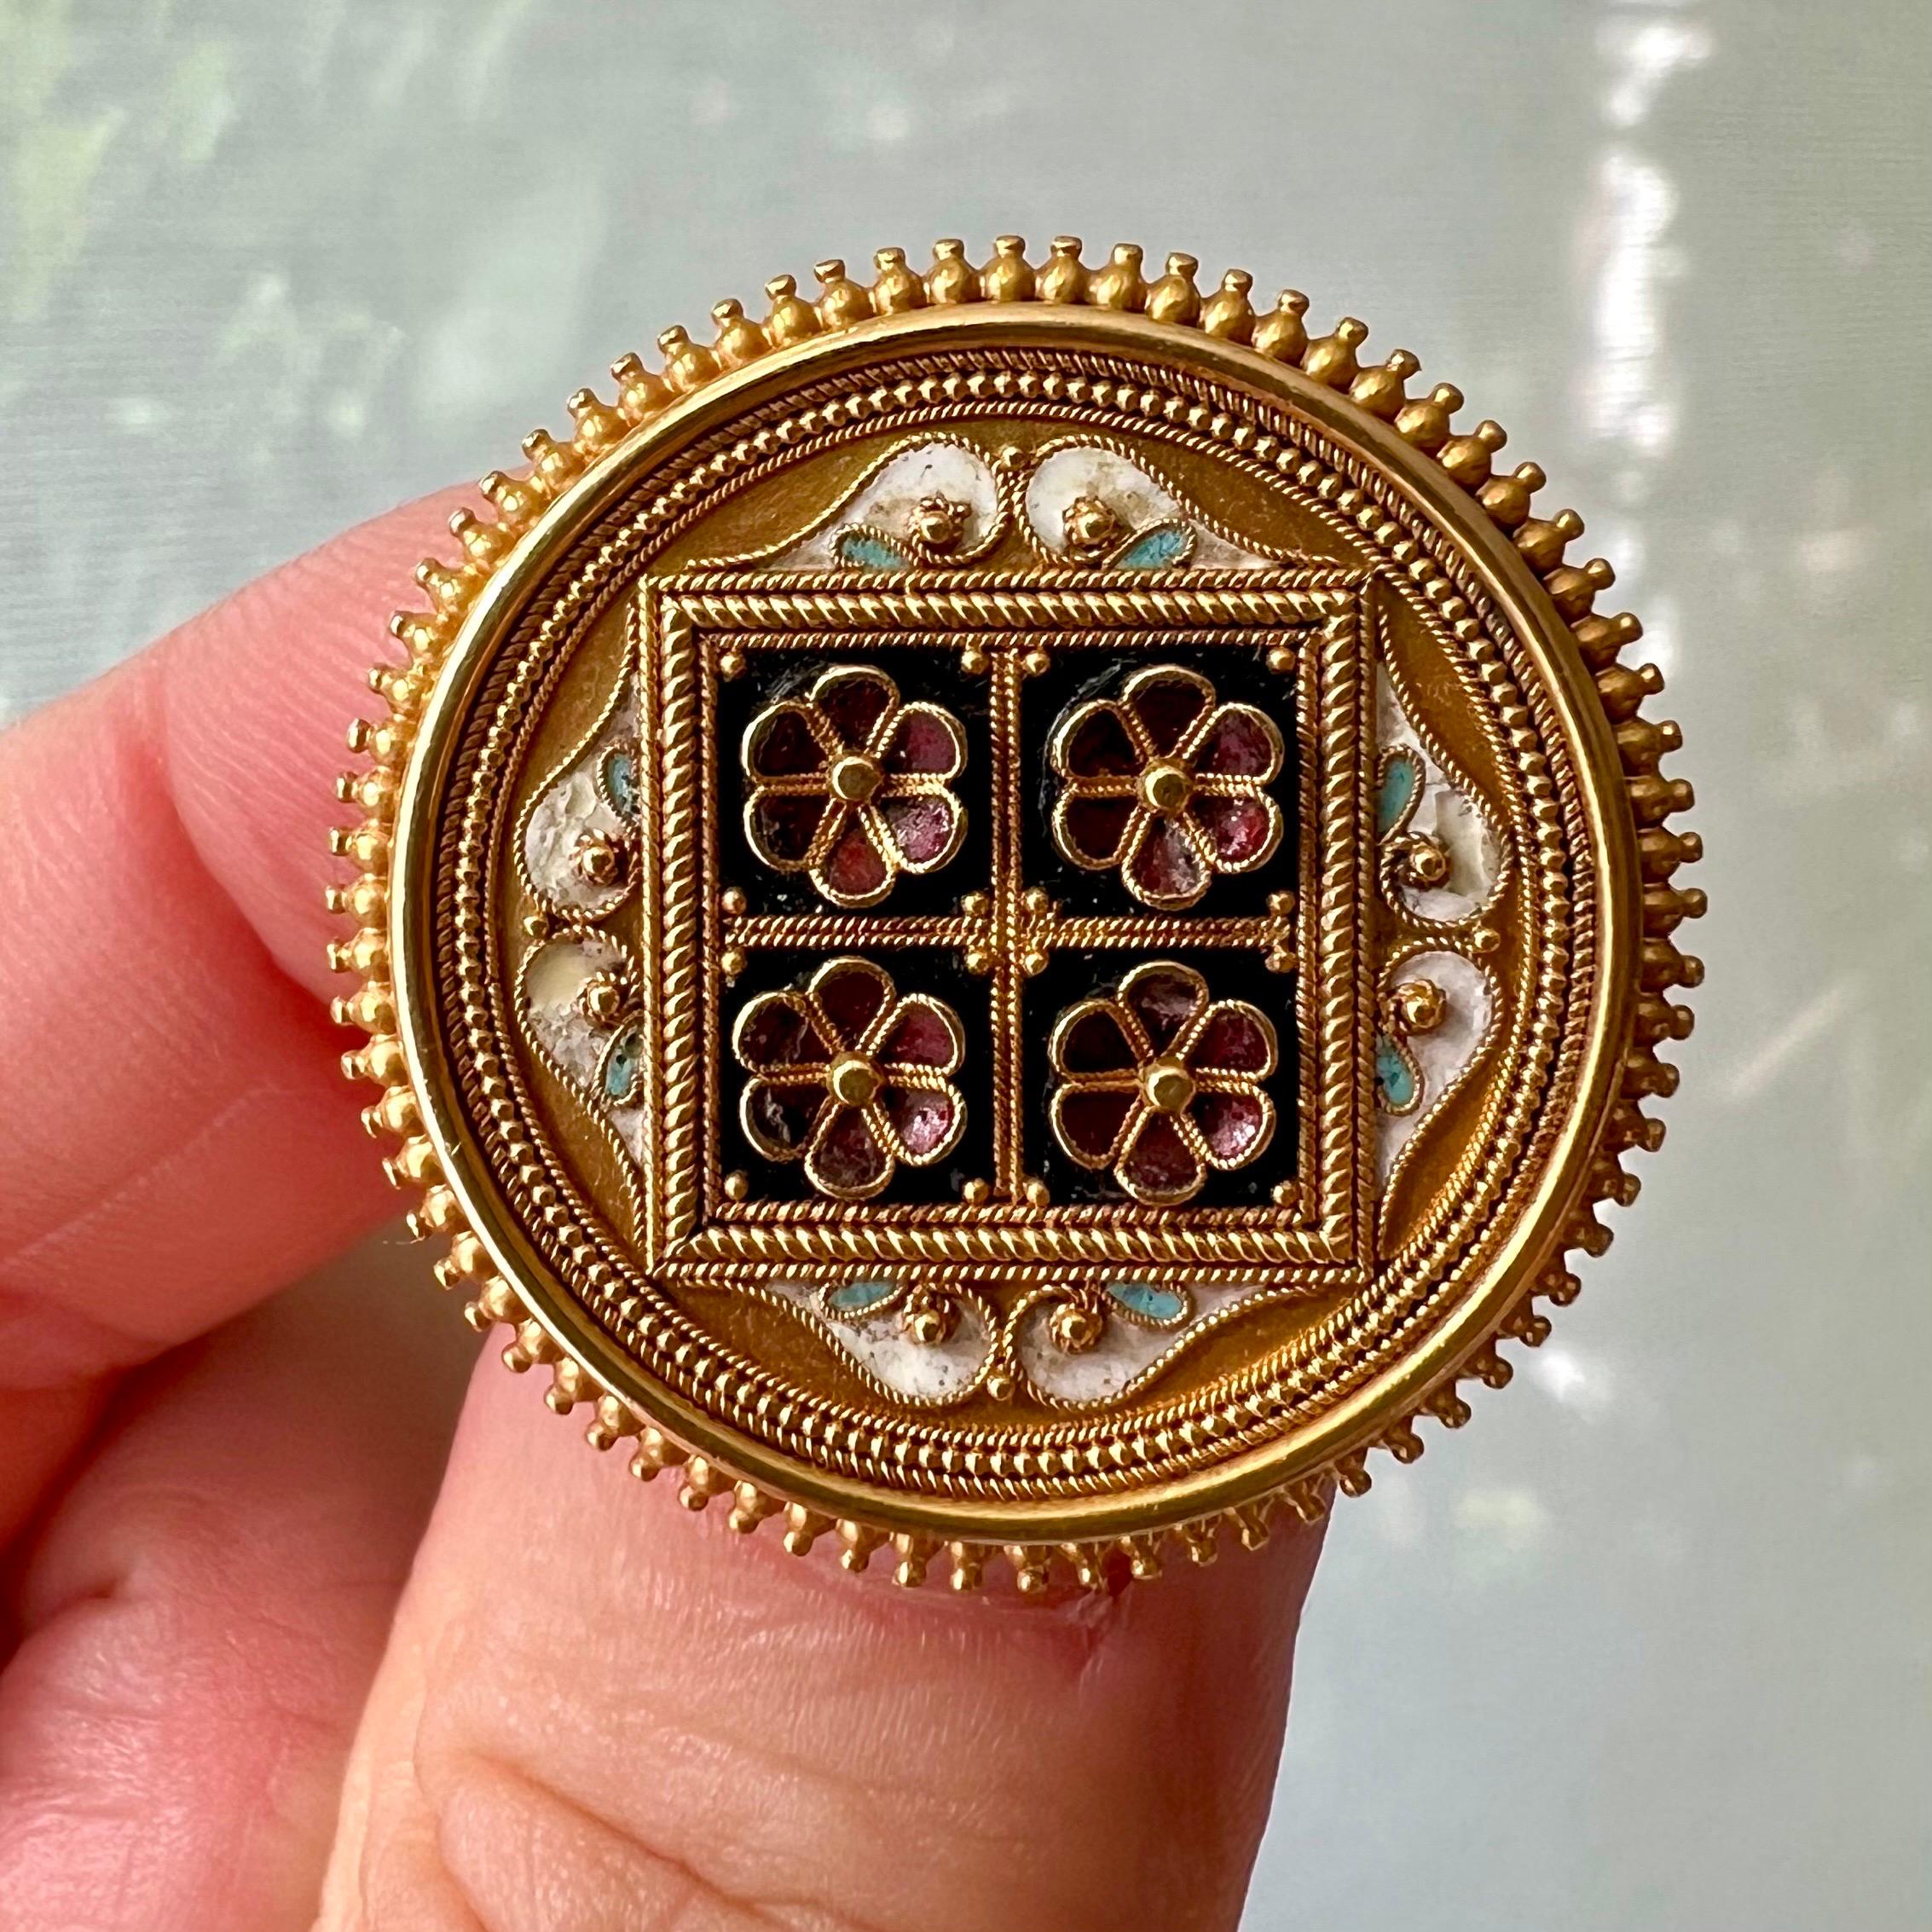 Es handelt sich um eine antike, runde Brosche aus 14-karätigem Gold im etruskischen Revival-Stil, verziert mit einem floralen Jugendstil-Motiv aus vier Blumen in einem Quadrat mit burgunderfarbenen Emailleblättern. Die Brosche ist mit verschiedenen